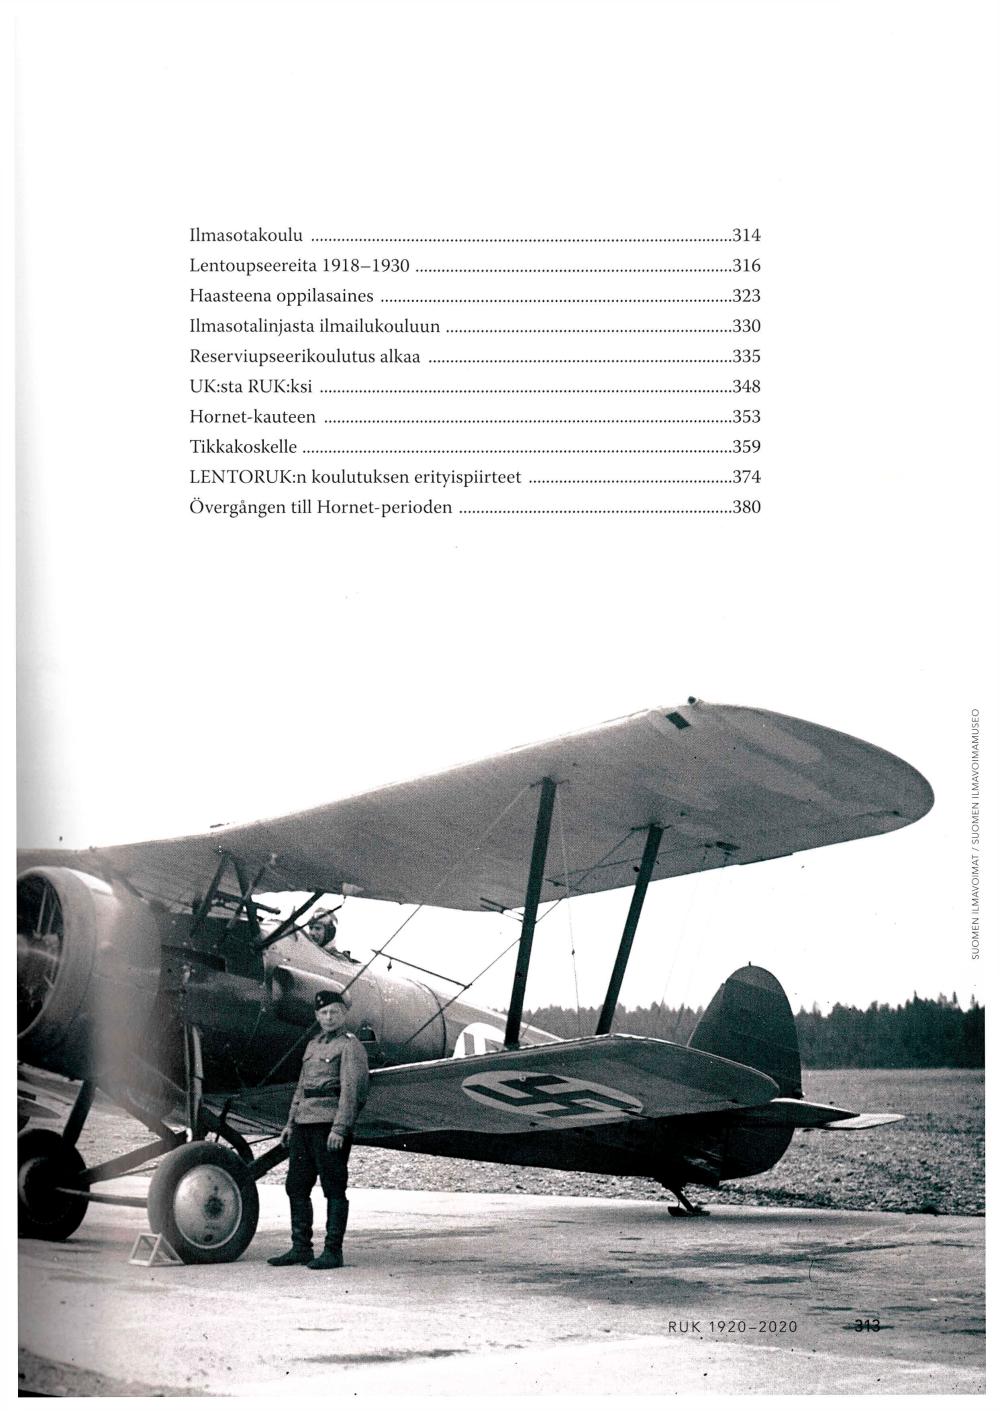 Kirjan luvun 12 sisällysluettelo ja kuvituksena vanhoja lentokoneita sekä lentäjiä.